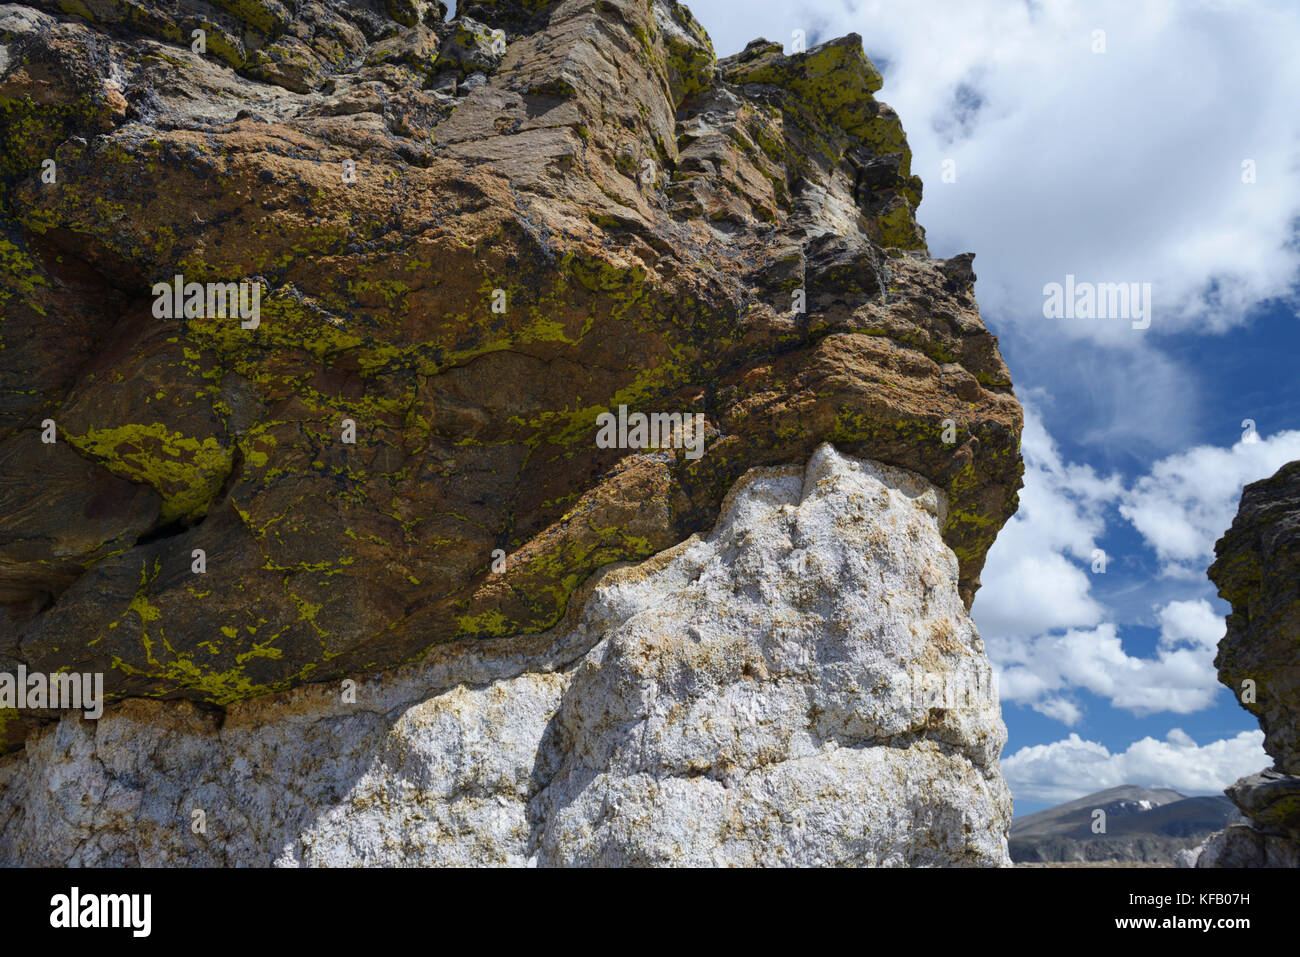 Les rochers en forme de champignon, Rocky Mountain National Park, de couleur sombre et CO., plus claire au-dessus de schiste granit. le granit a érodé plus rapidement et réduit Banque D'Images